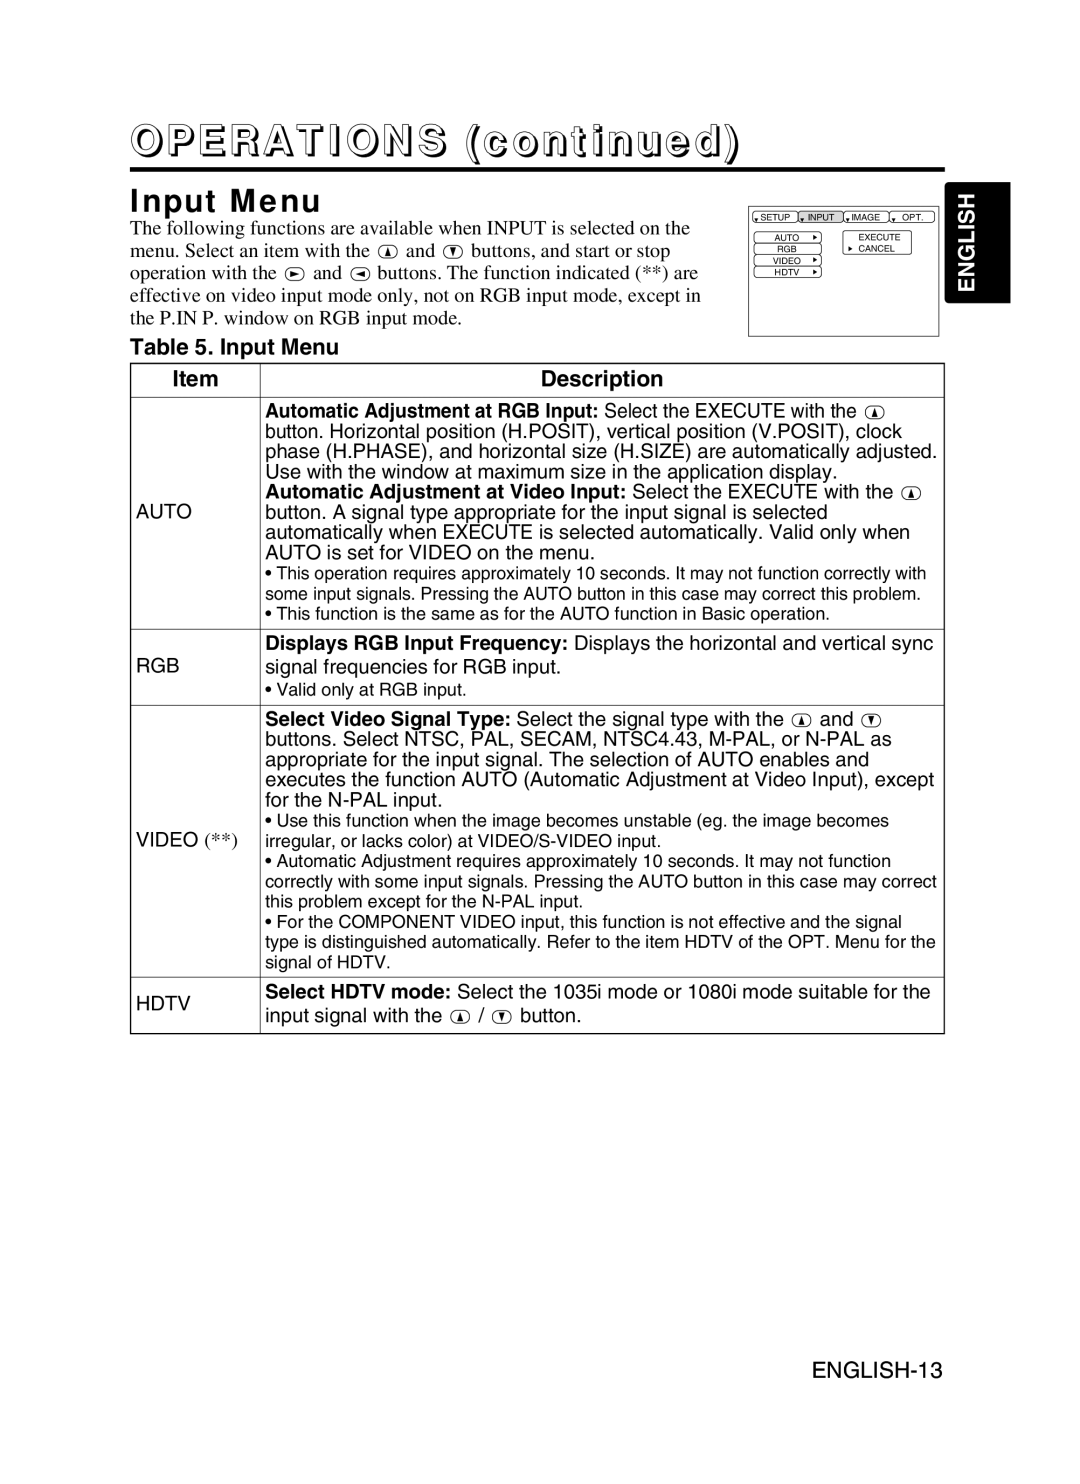 BOXLIGHT CP-775I user manual Input Menu, ENGLISH-13, OPERATIONS continued, English, Description 